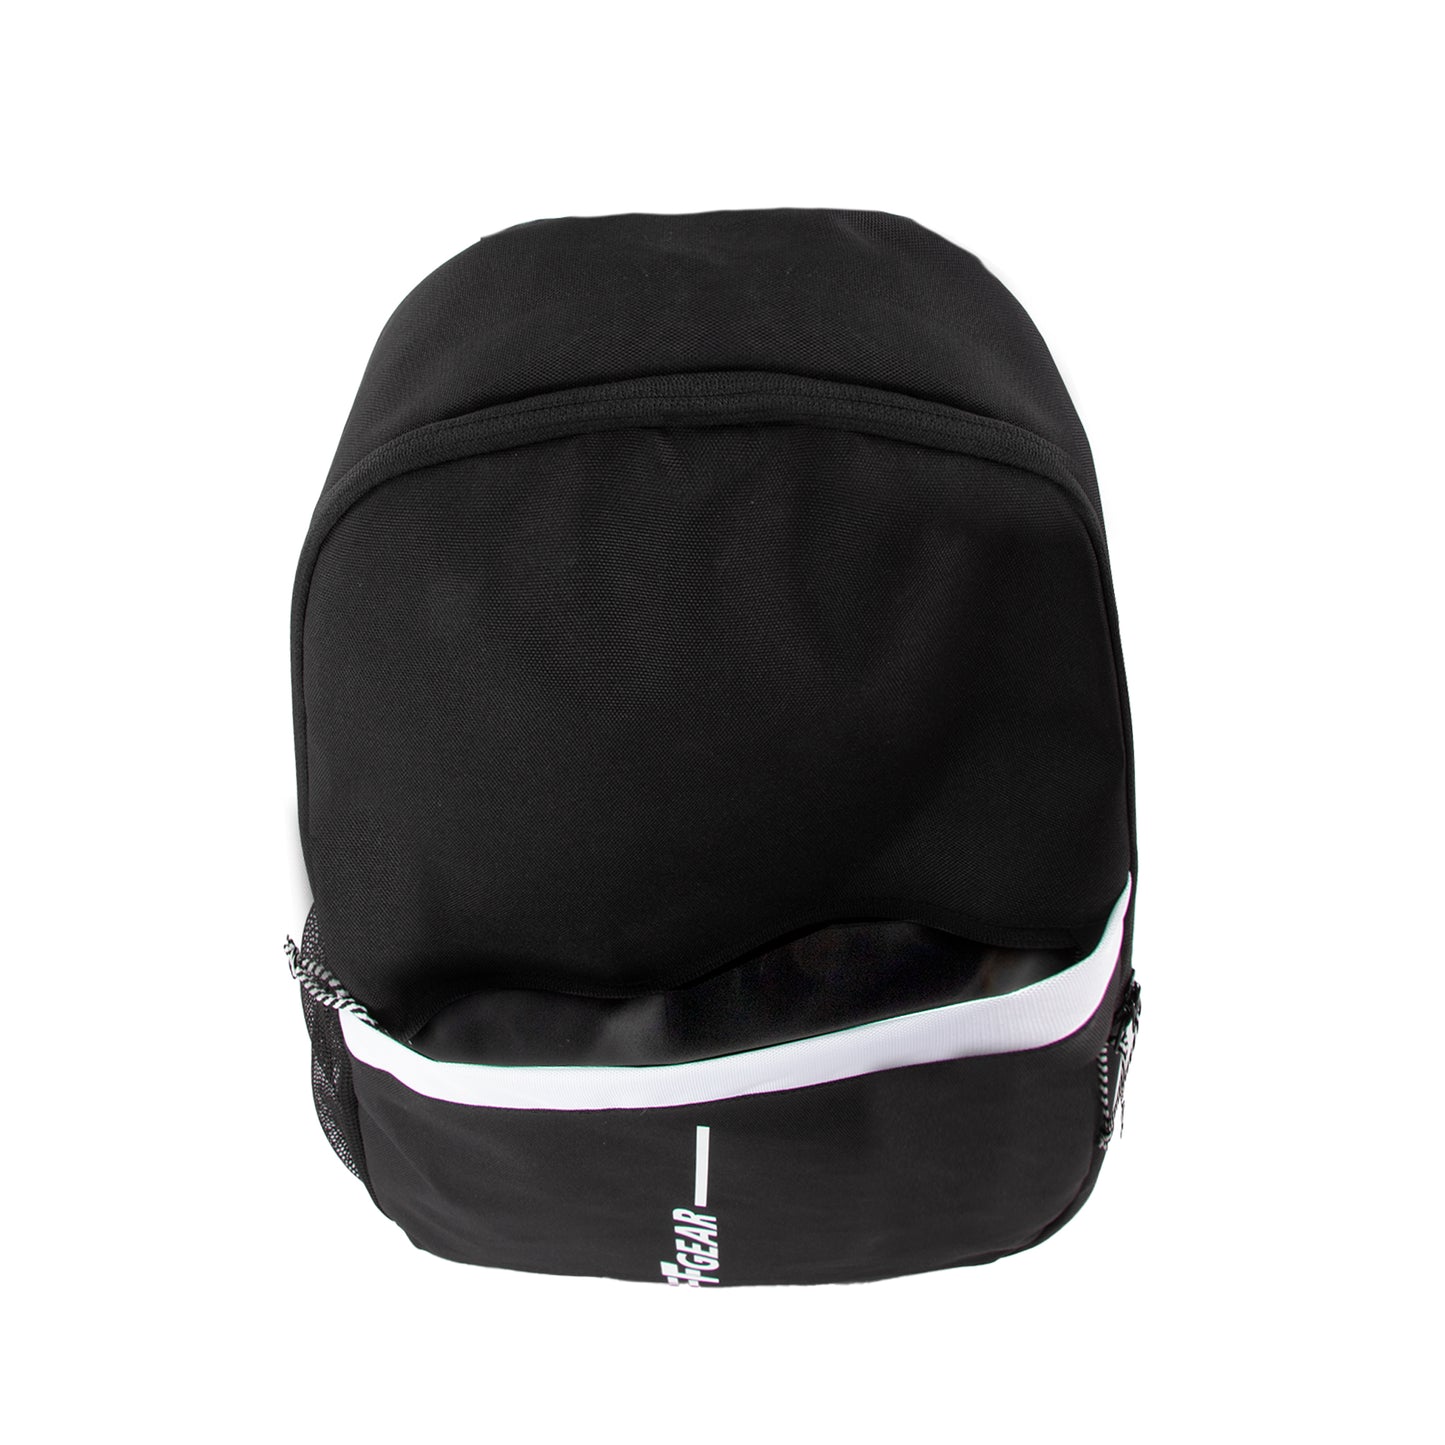 Tyro 21L Black Backpack